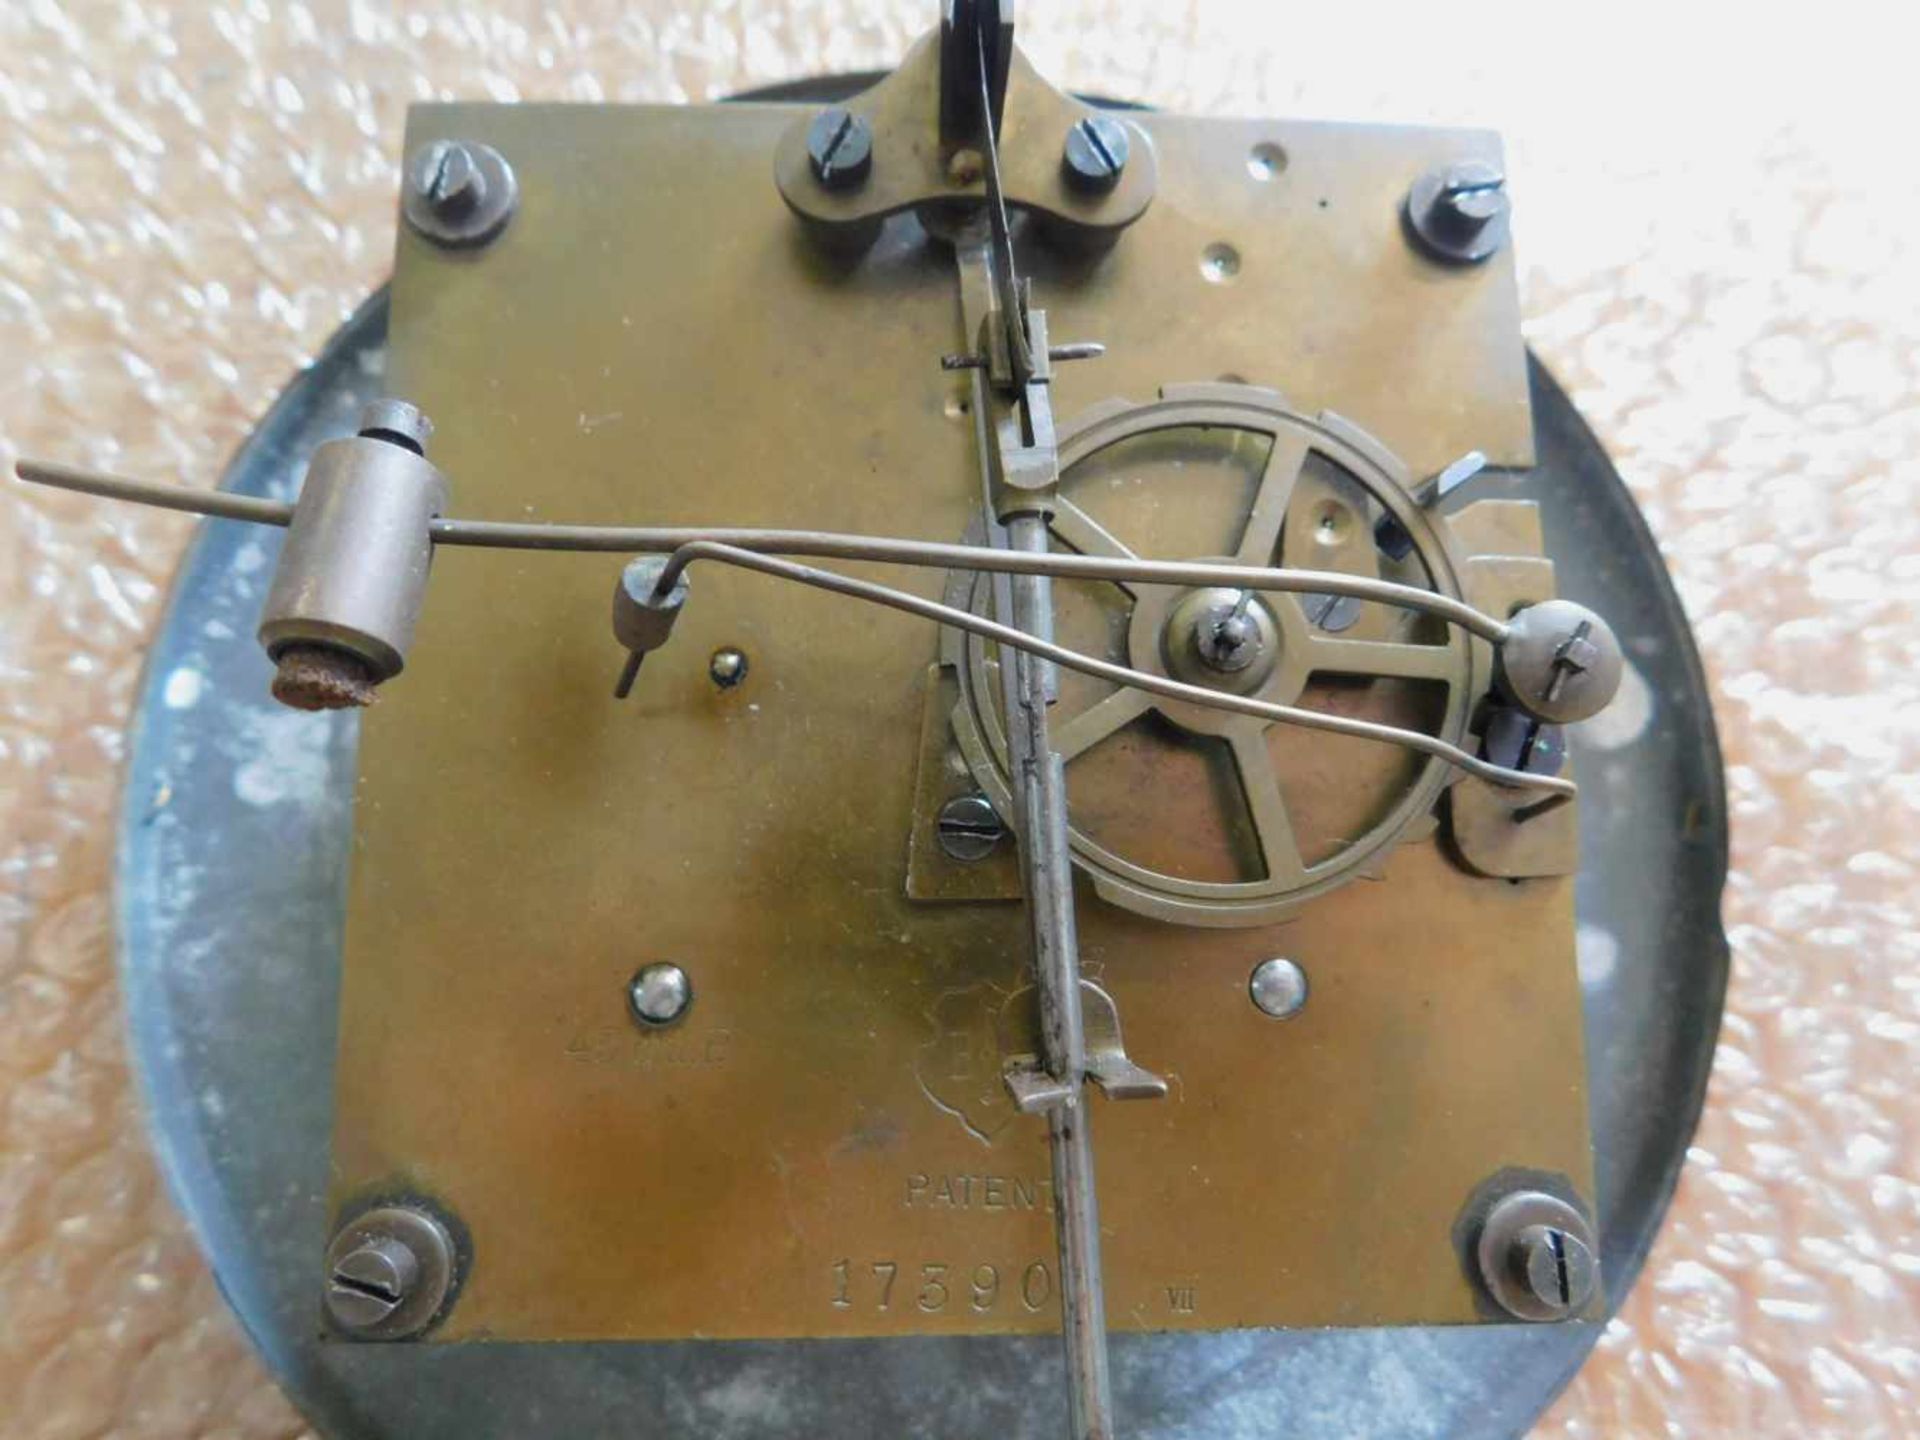 Großer Regulator, Eiche, Jugendstil um 1900, Glockengong, Uhrwerk punziert B.P. Patent und - Bild 5 aus 7